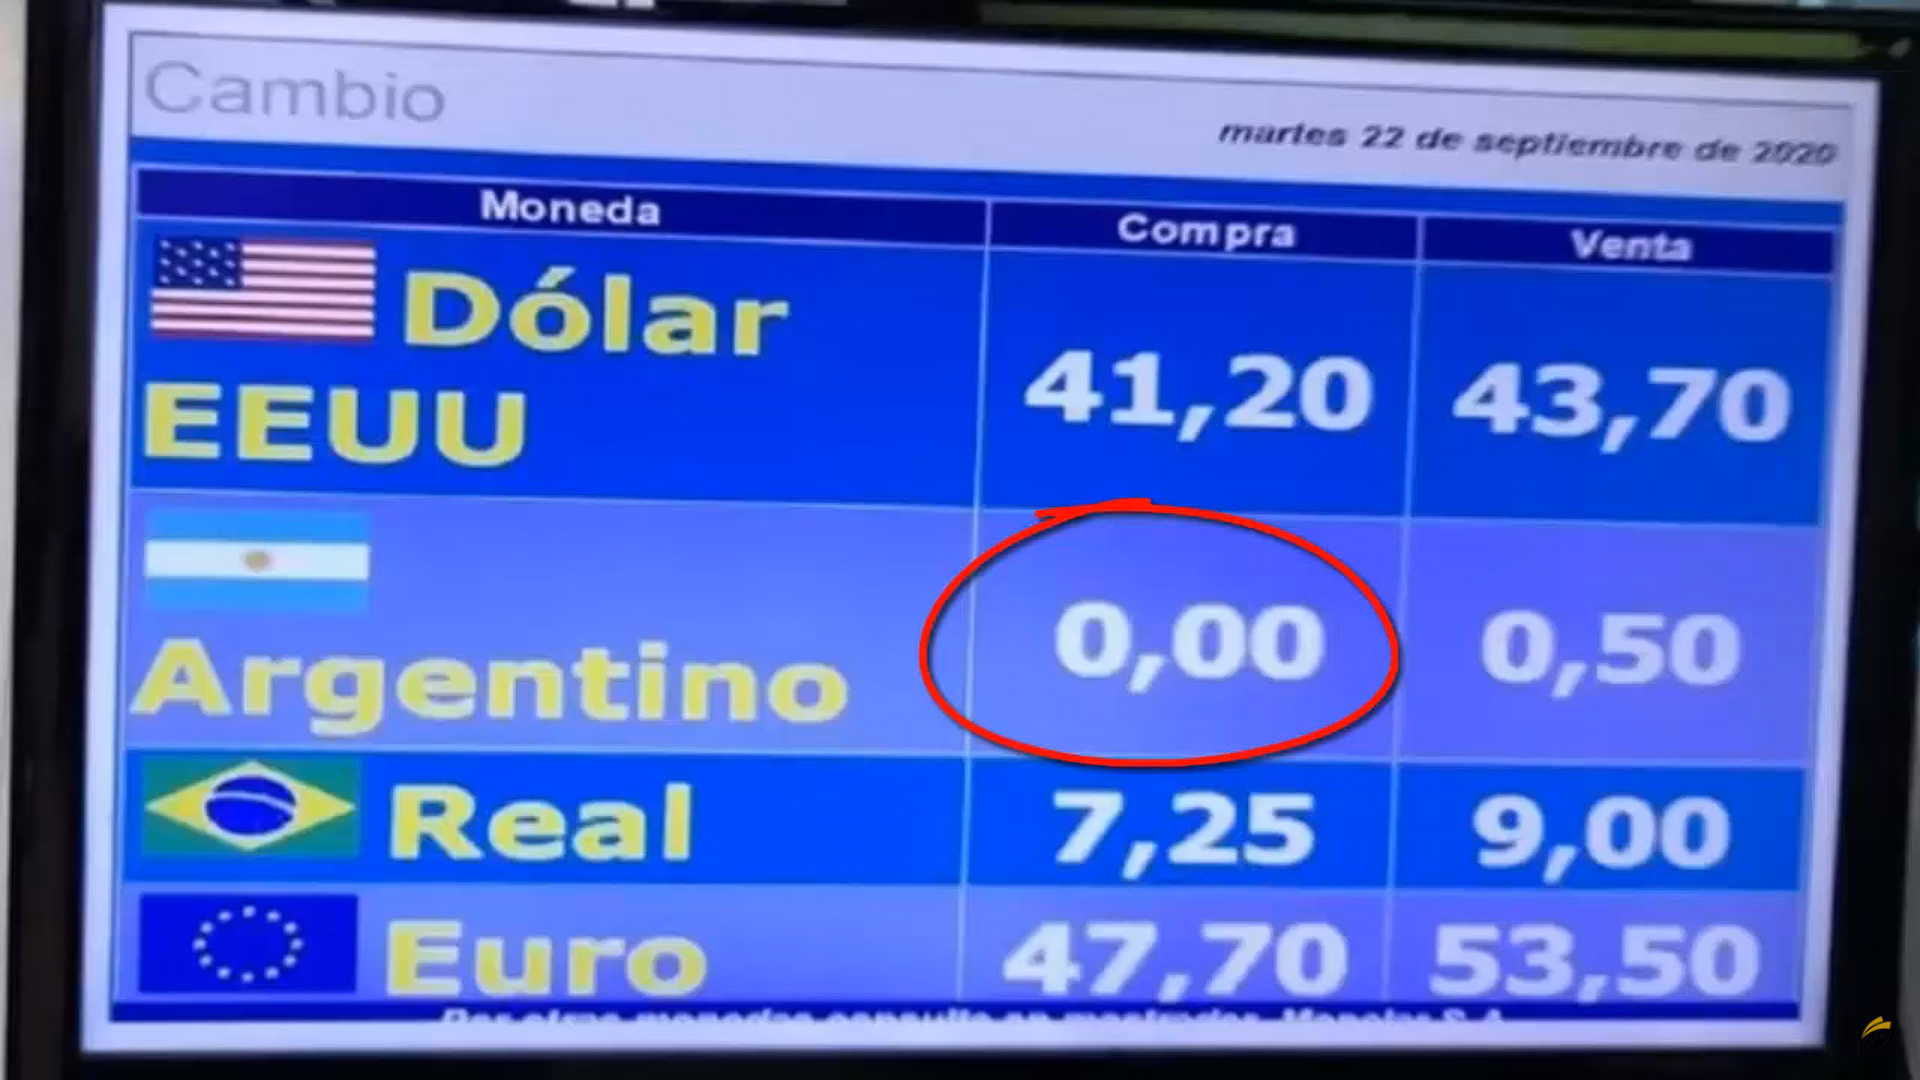 Casas de câmbio no Uruguai registraram a cotação do peso argentino em zero. A economia da Argentina está em ruínas, mas por que zero?